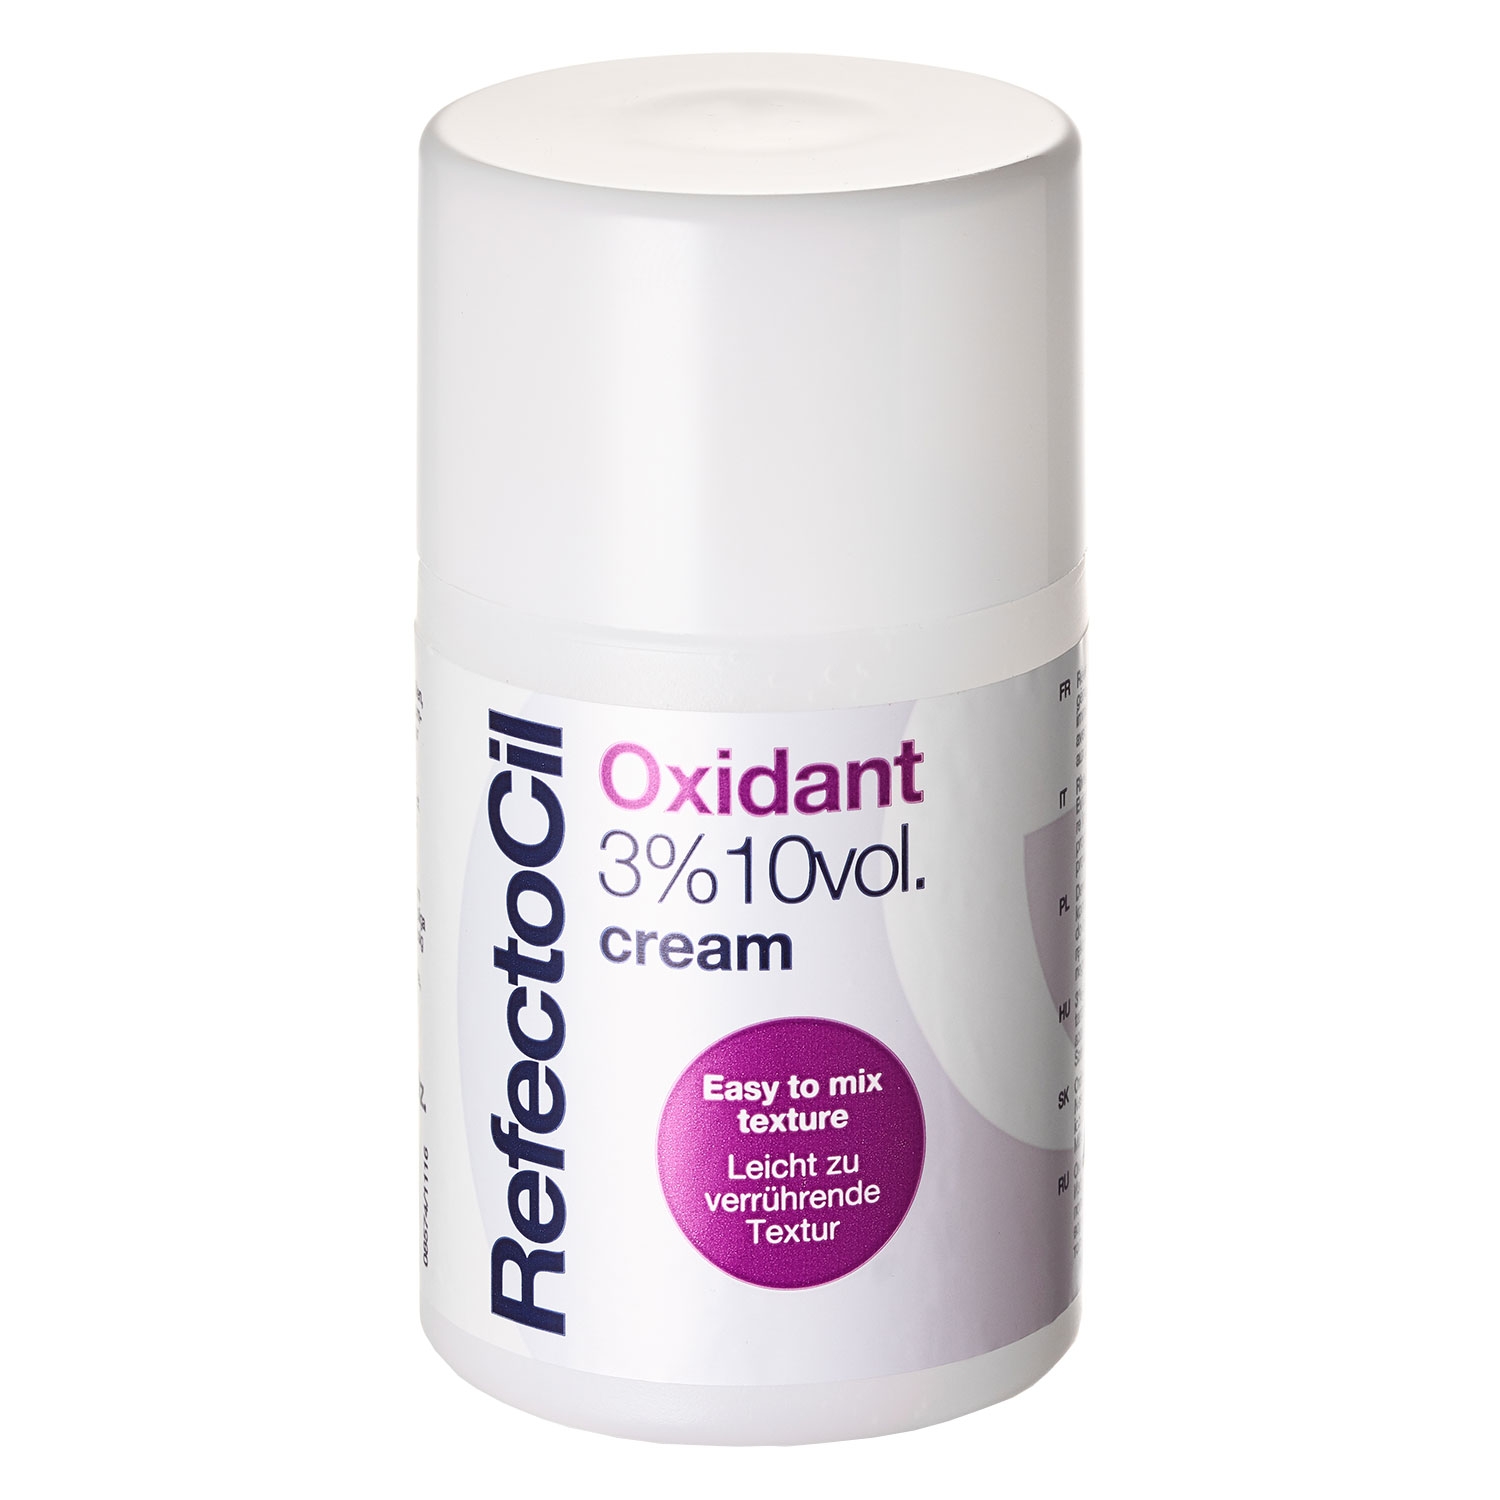 Produktbild von RefectoCil - Oxidant 3% Cream